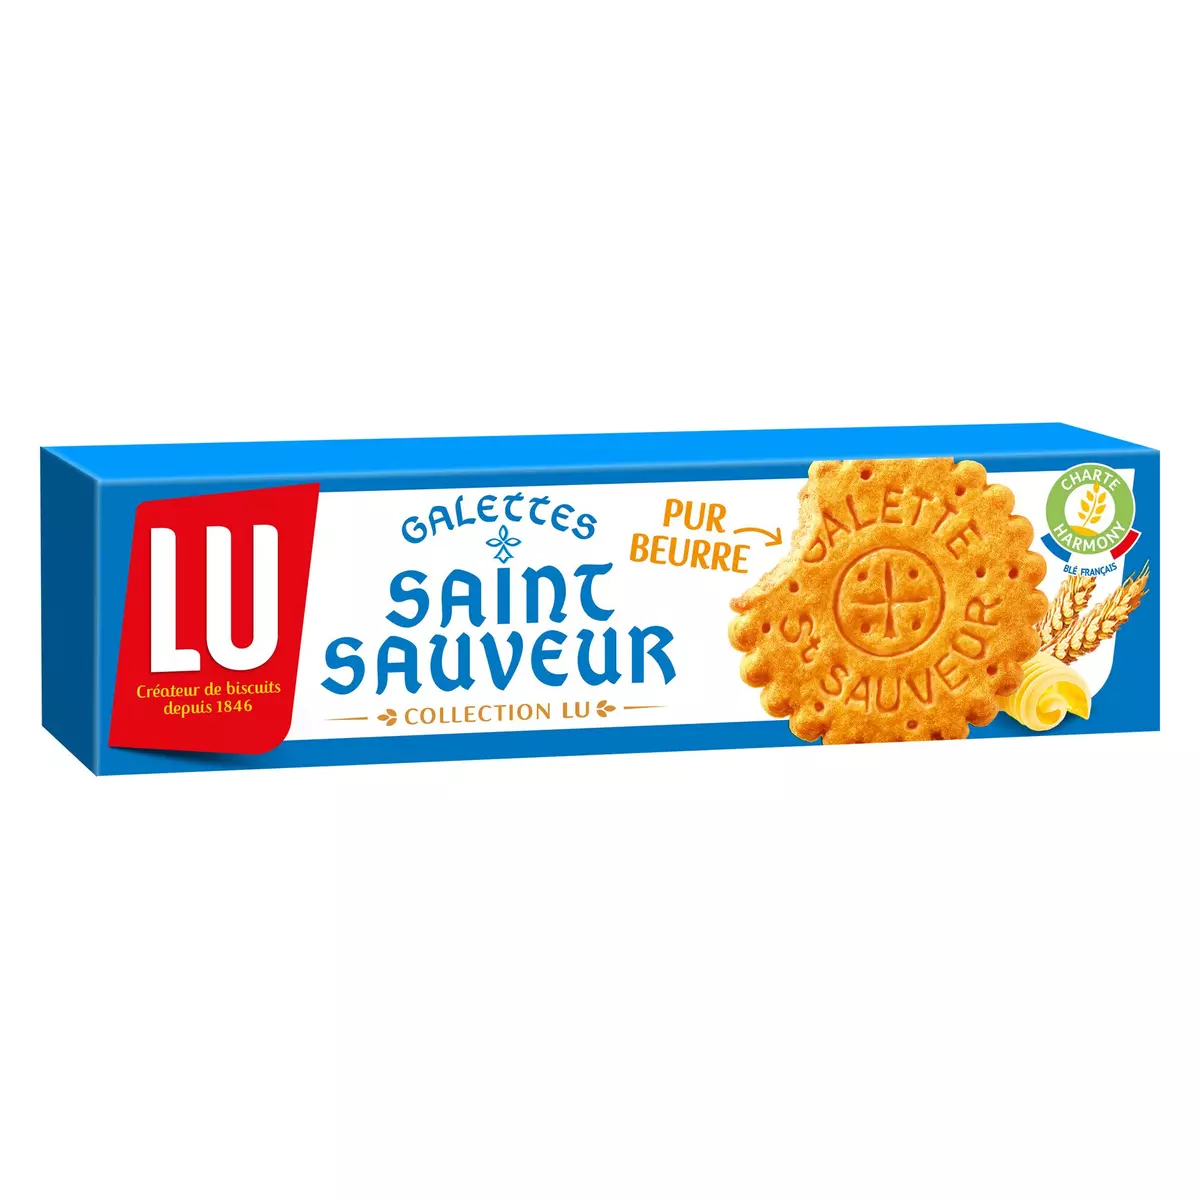 LU Galettes Saint-Sauveur pur beurre 130g